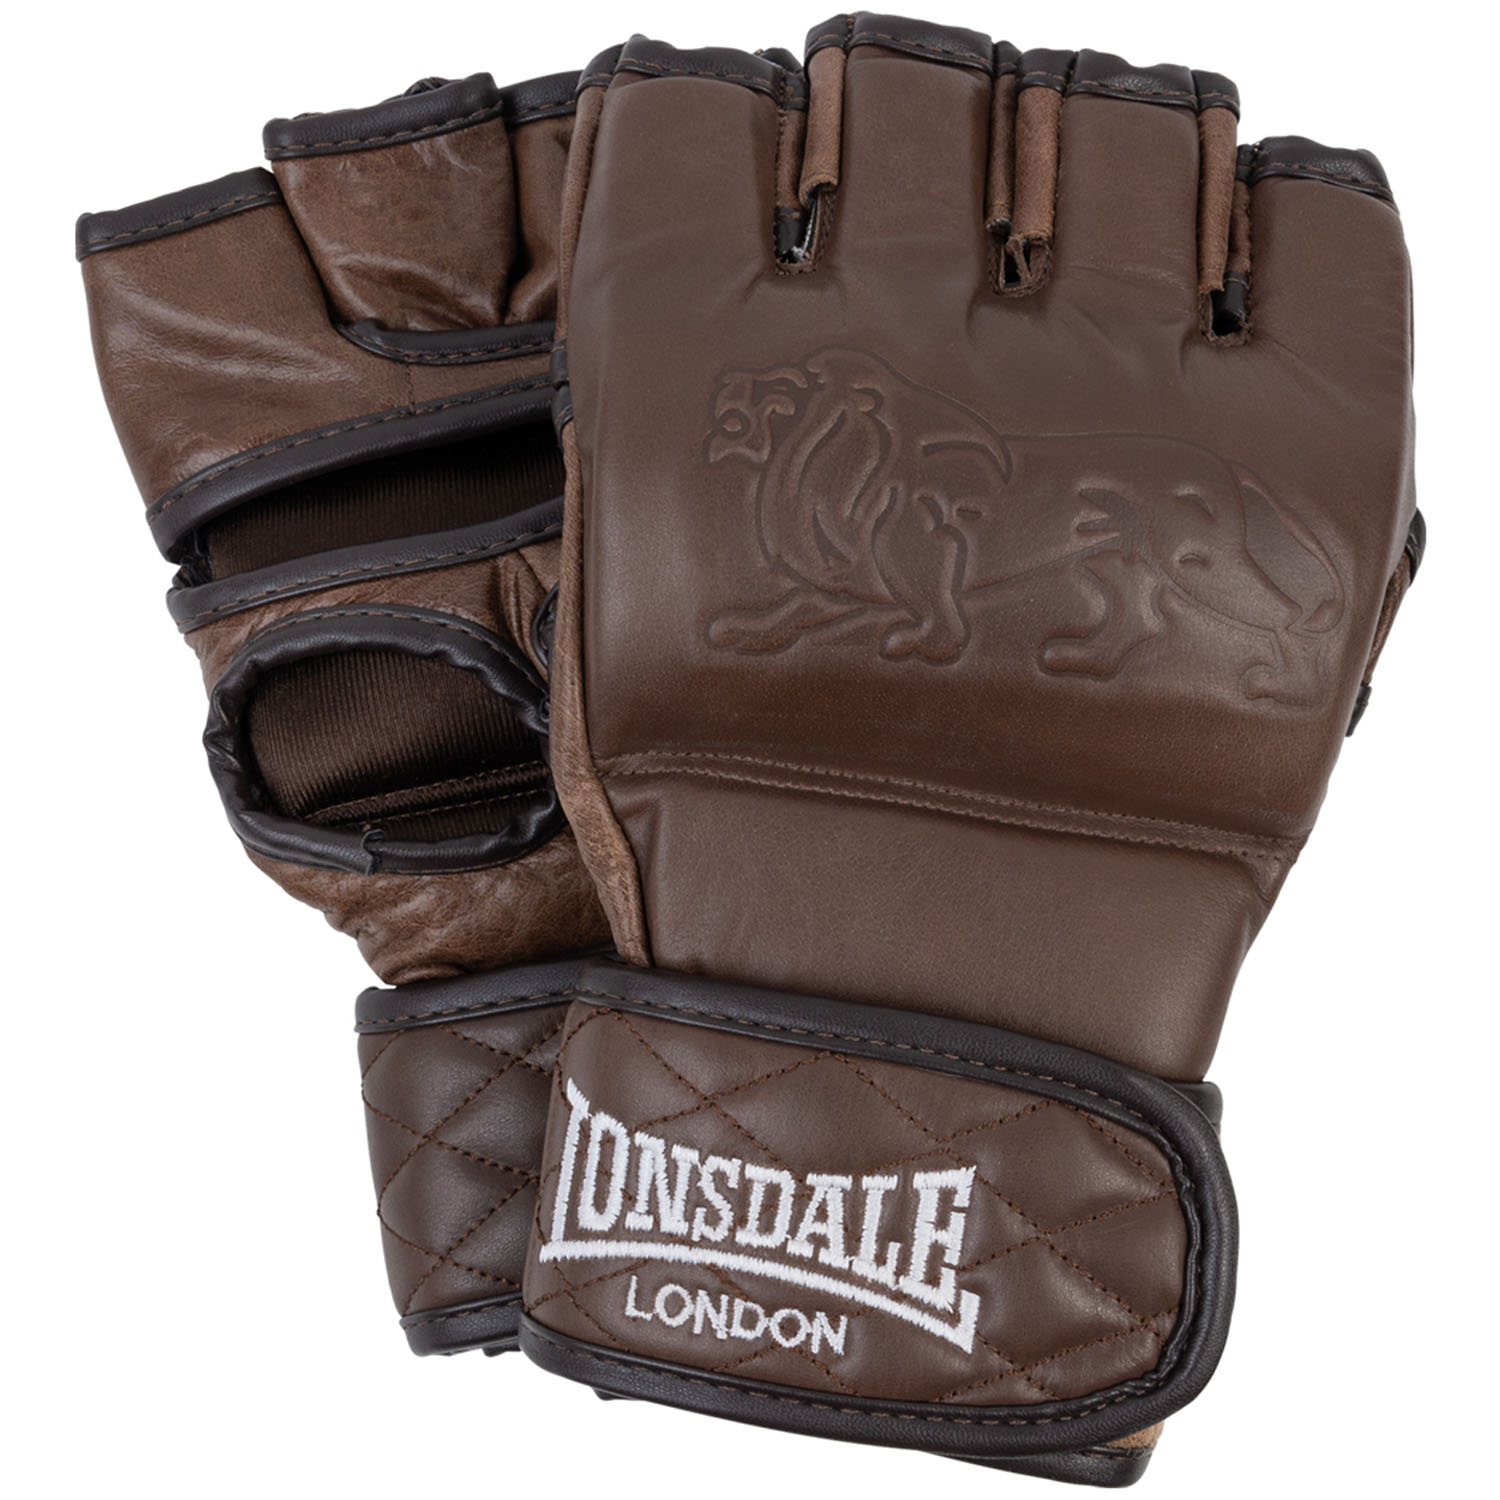 Lonsdale MMA Handschuhe, Vintage, braun, S/M